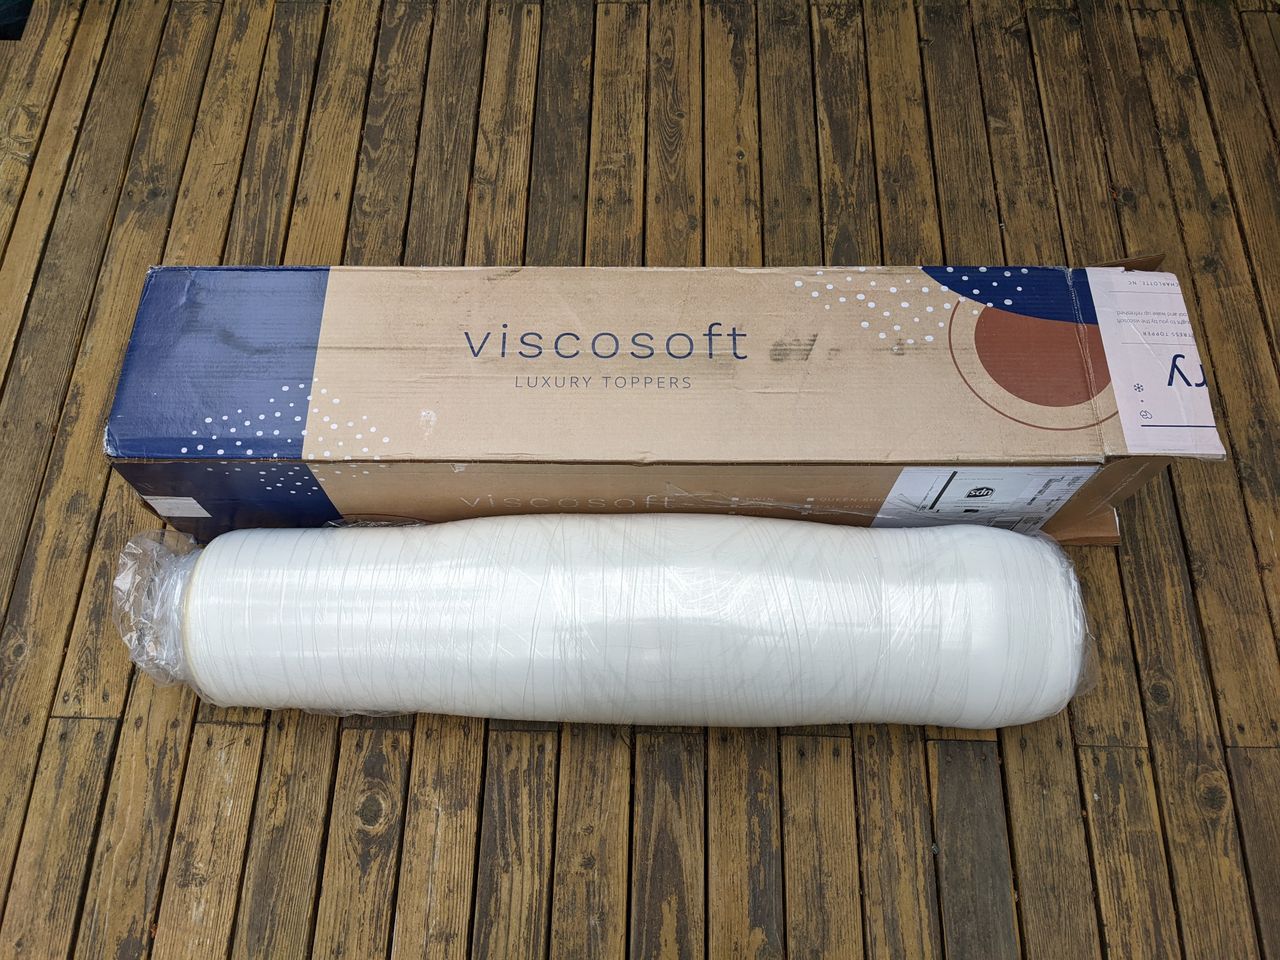 viscosoft 3 inch mattress topper review